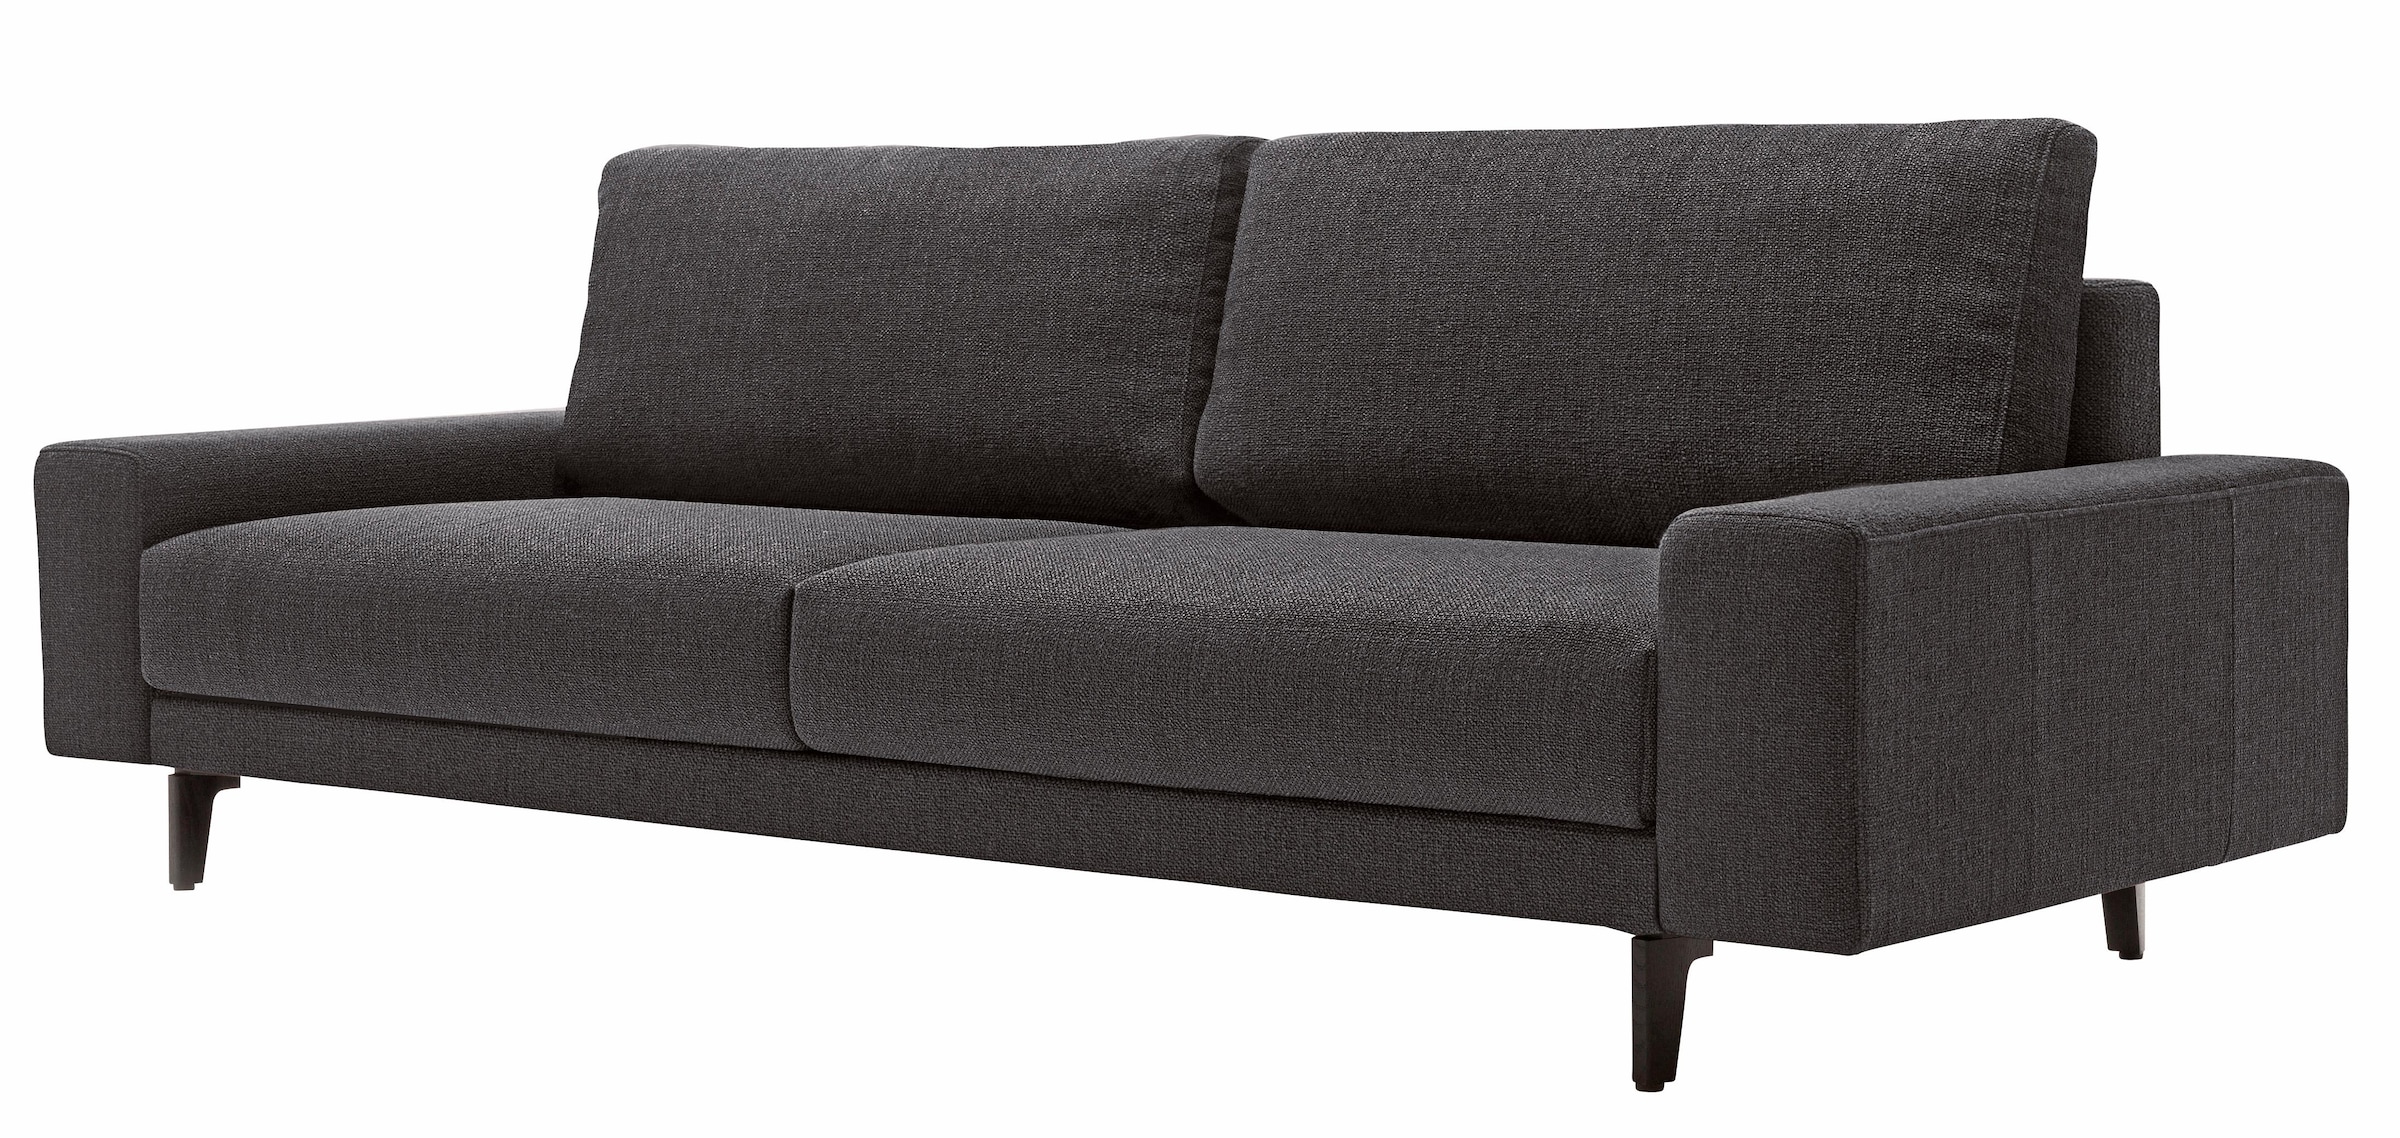 Hülsta in Auswahl bestellen großer OTTO Sofa bei